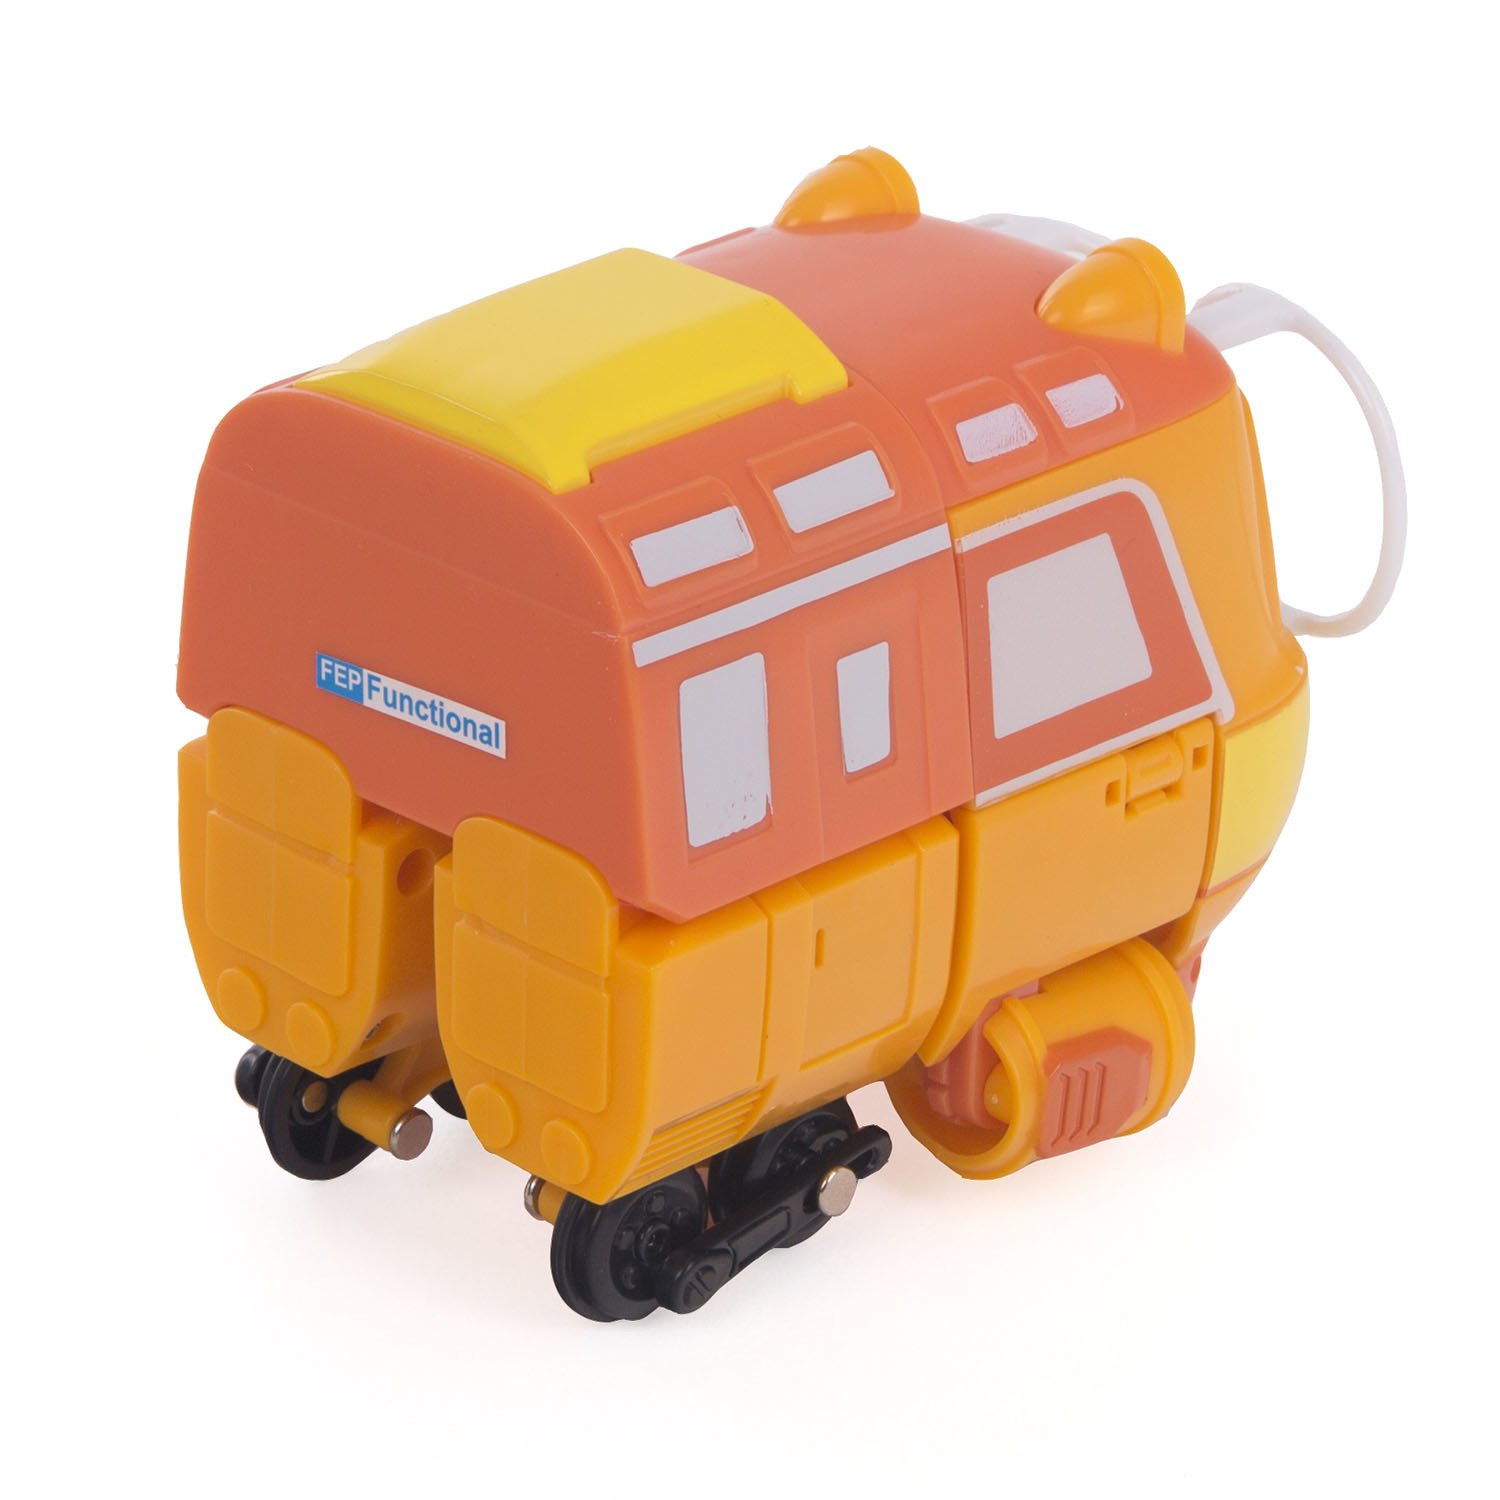 Паровозик Robot Trains Джинни 80183